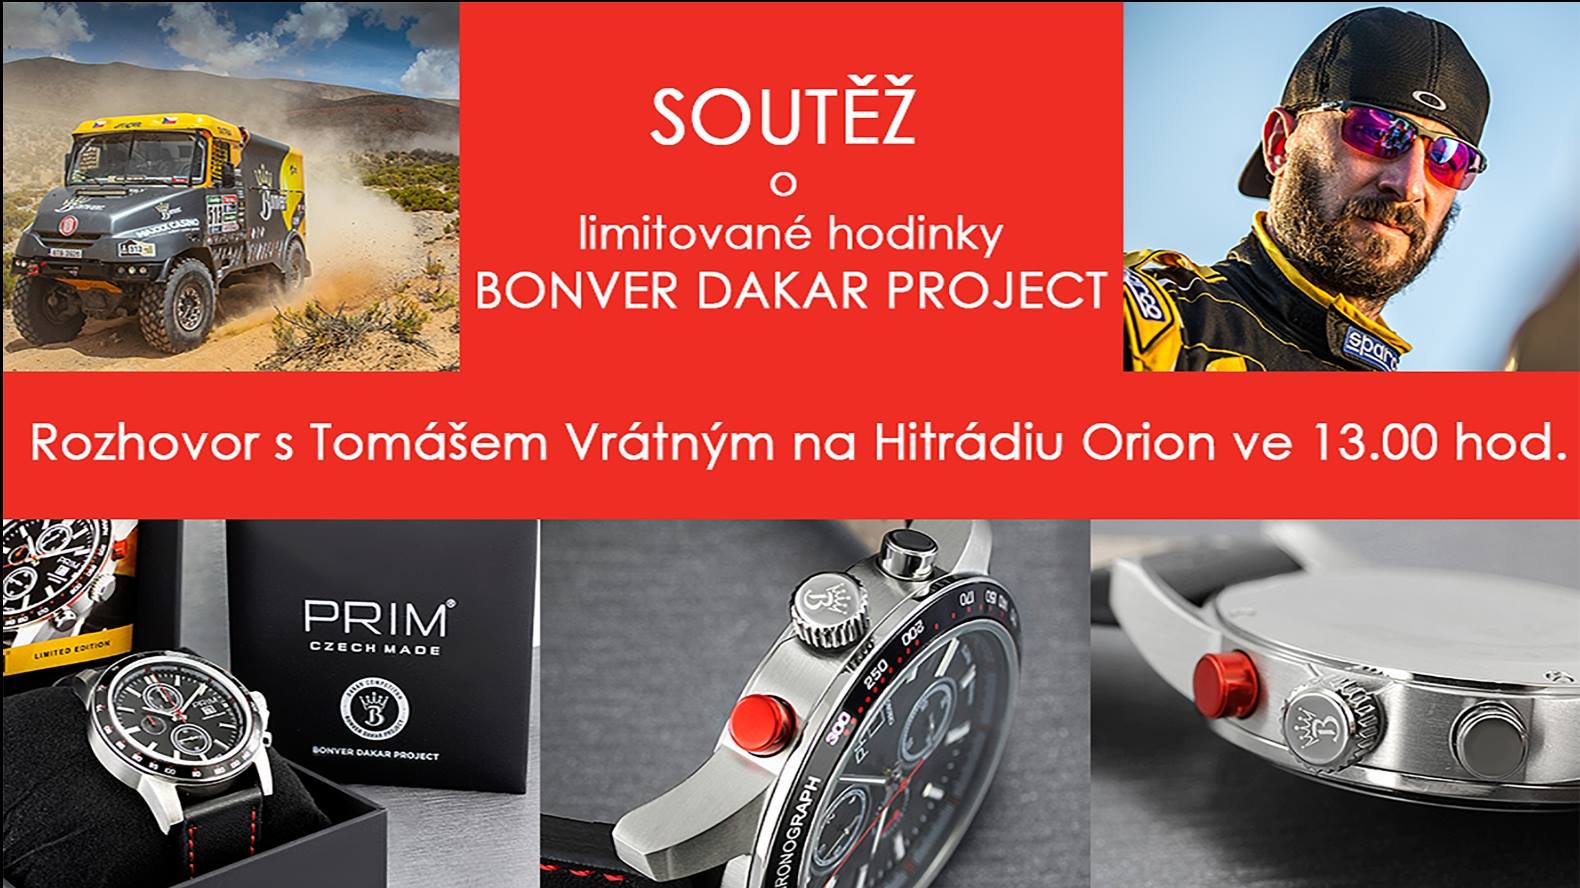 Rychlá soutěž s Bonver Dakar Projektem o hodinky PRIM Dakar